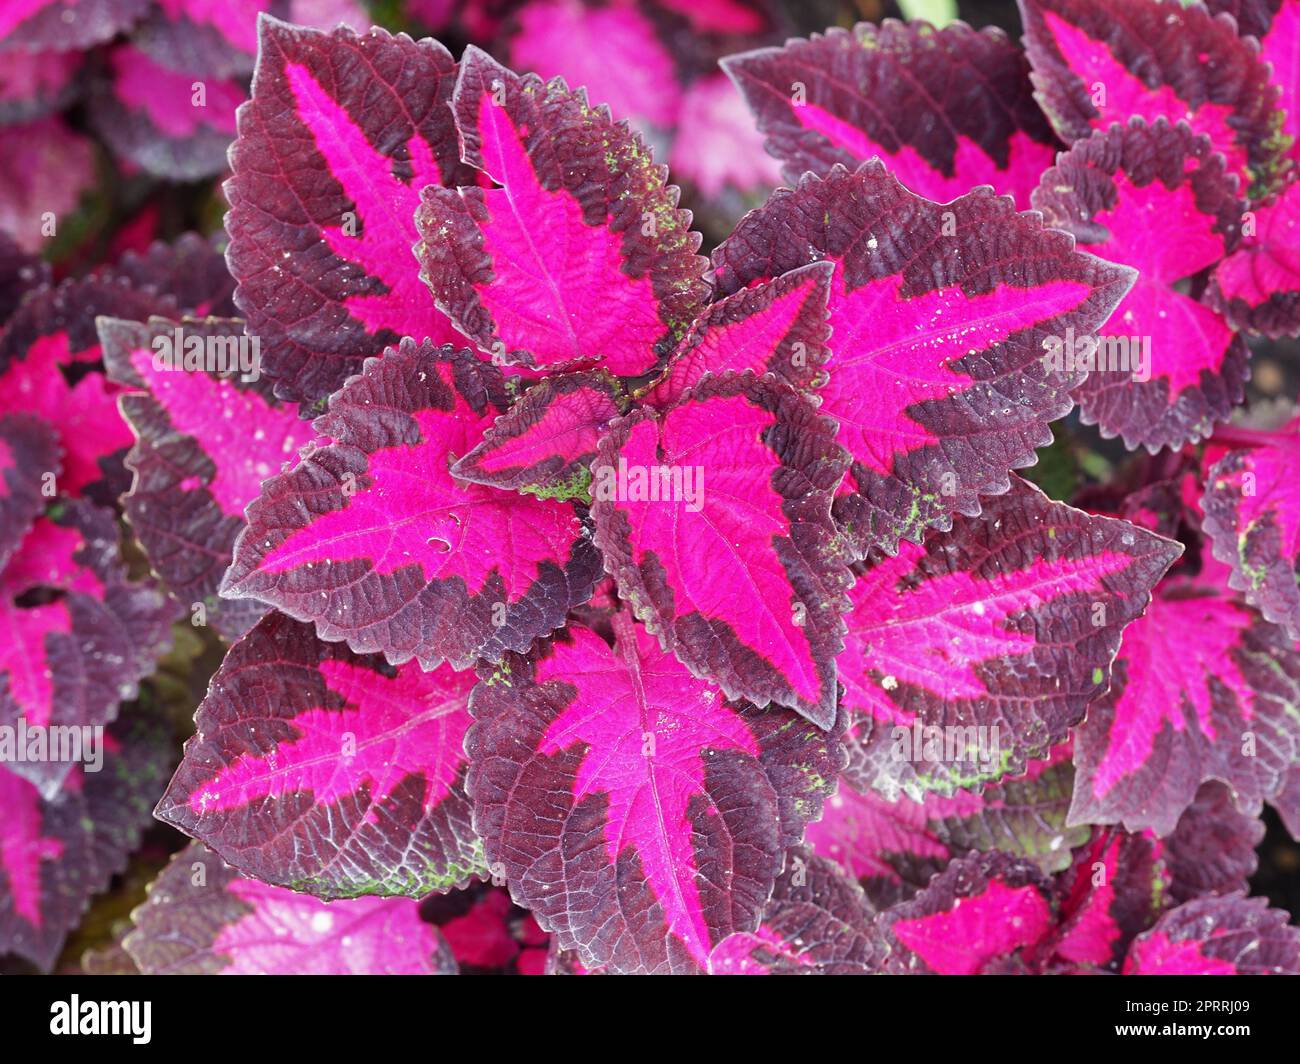 Von oben gesehen farbenfrohe Coleus-Blätter Stockfoto